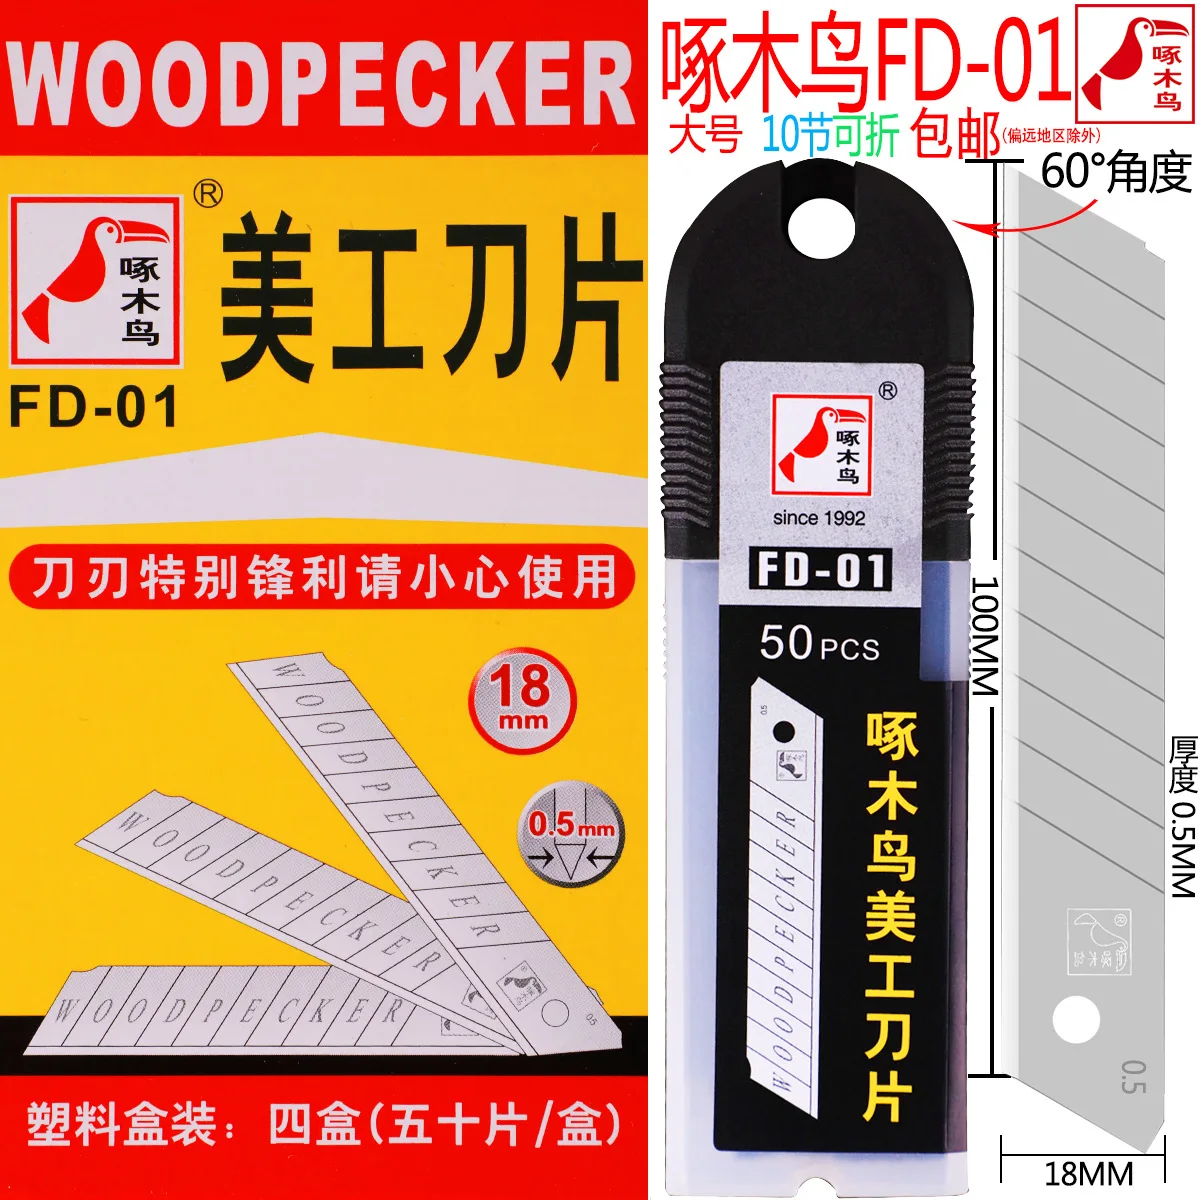 Woodpecker blade large art blade 18mm wallpaper blade wallpaper blade medium blade 50 pieces / 100 pieces FD-01